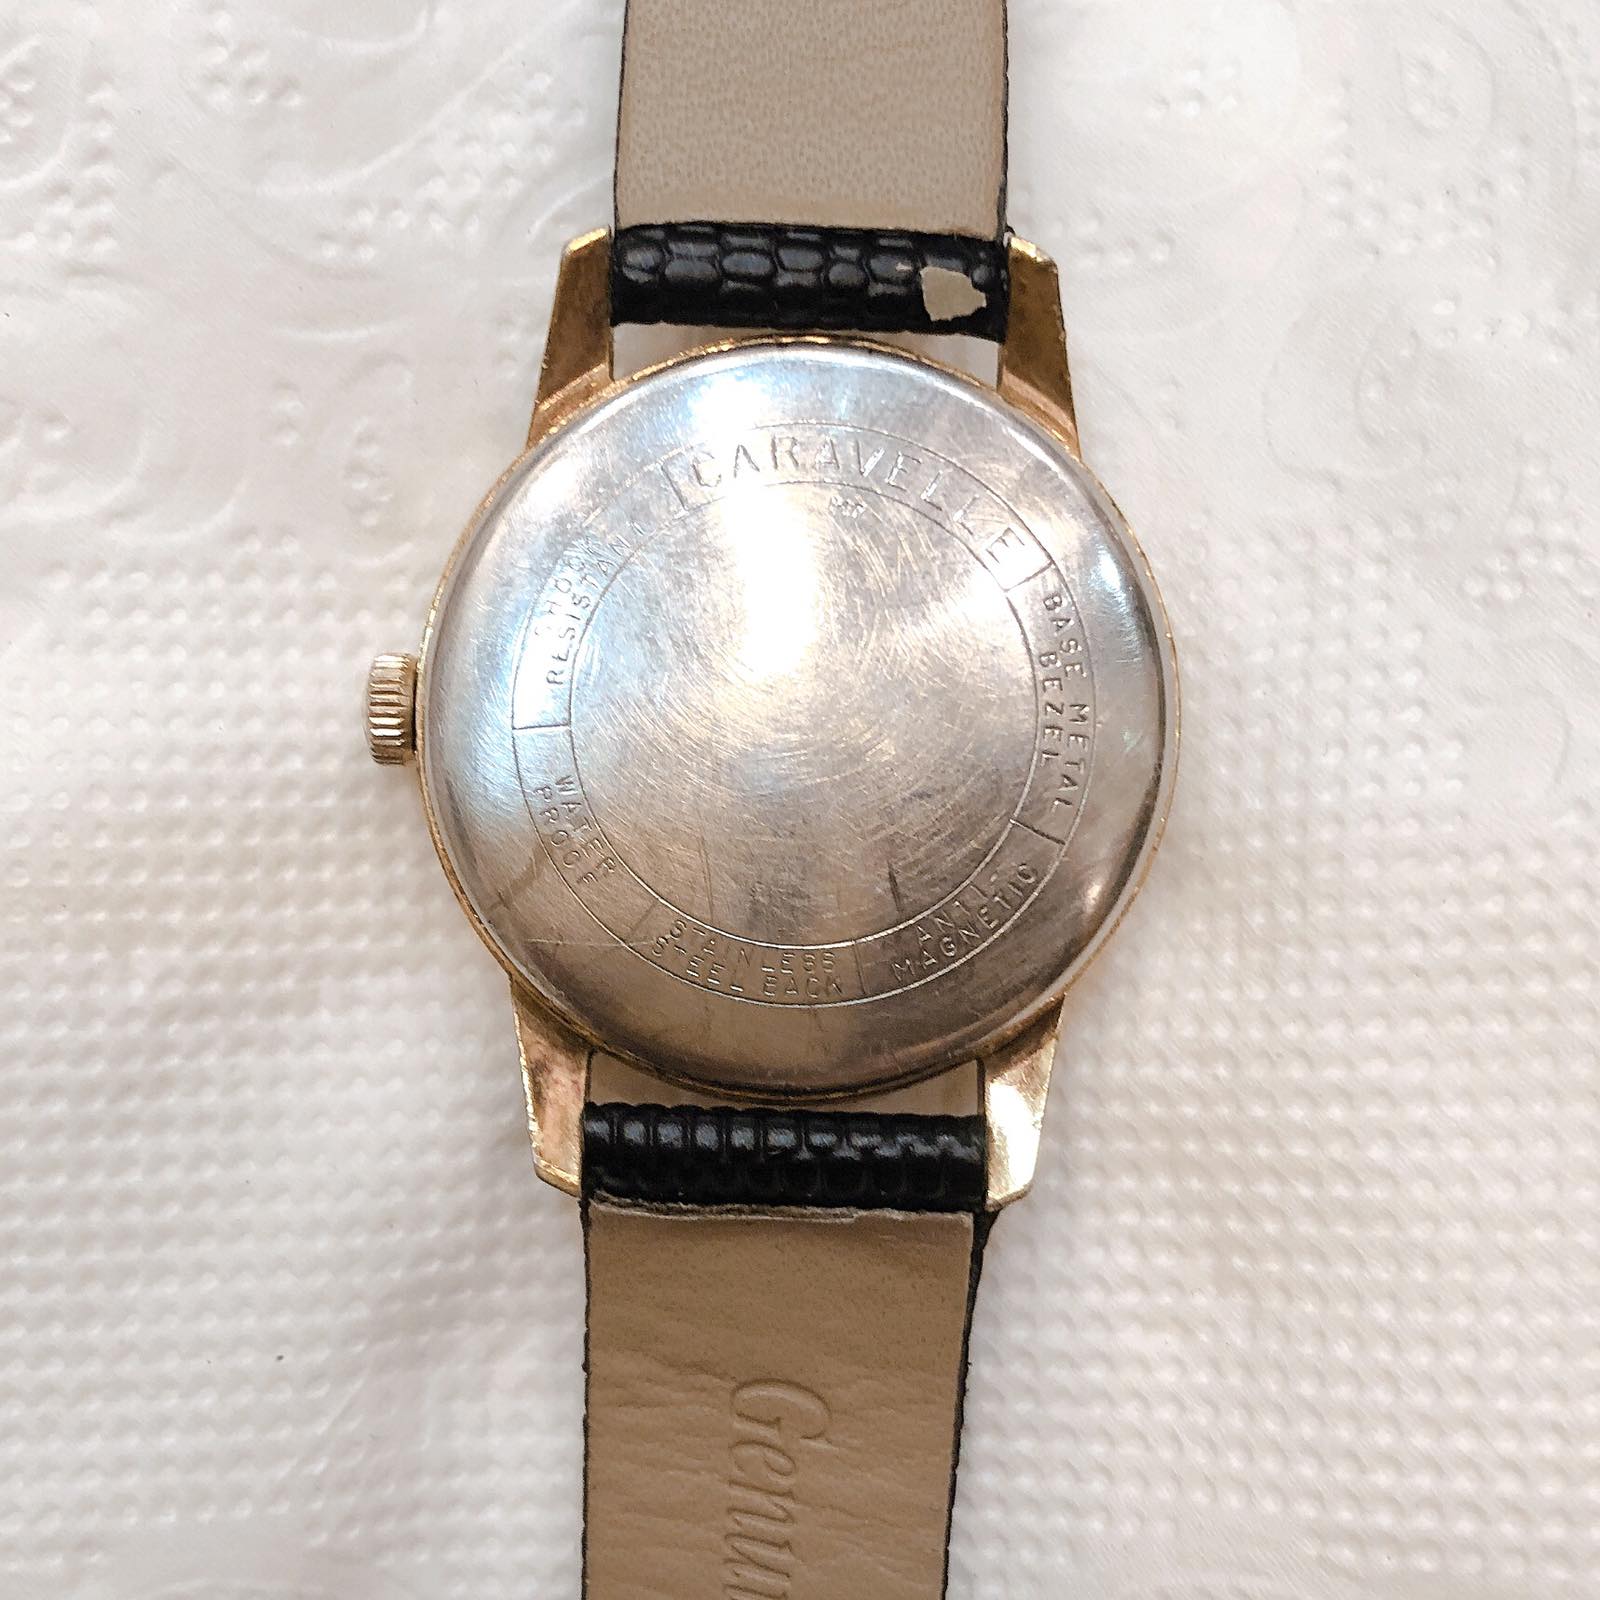 Đồng hồ cổ CARAVELLE lên dây LACKE 18k chính hãng Thụy Sỹ